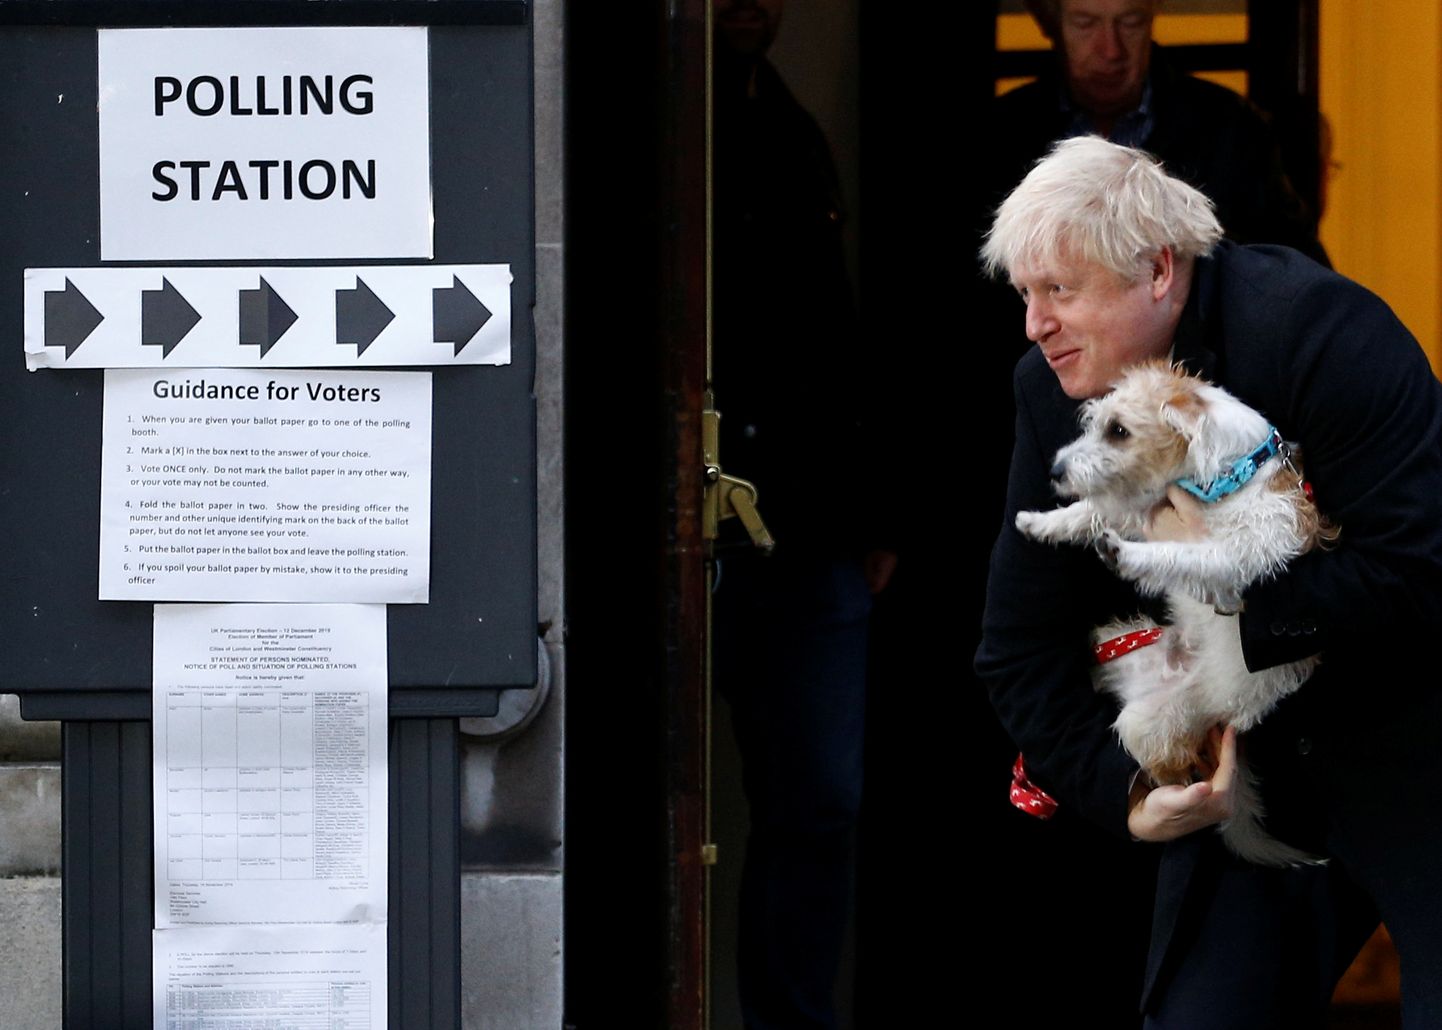 Briti peaminister Boris Johnson käis valimijaoskonnas oma koera Dilyniga.